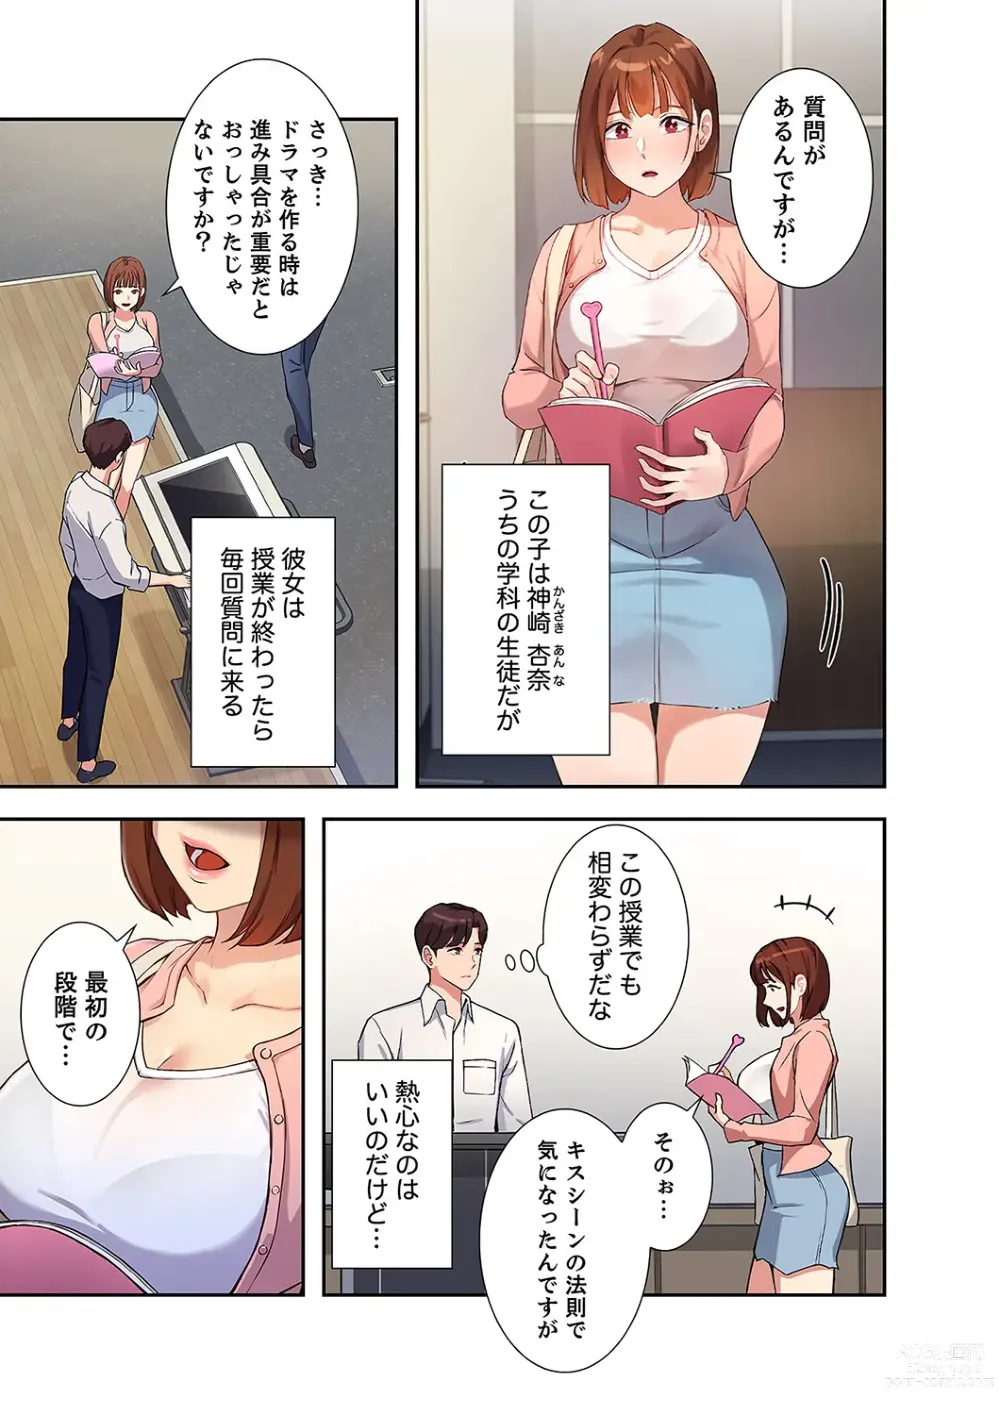 Page 9 of manga Hatachi 01